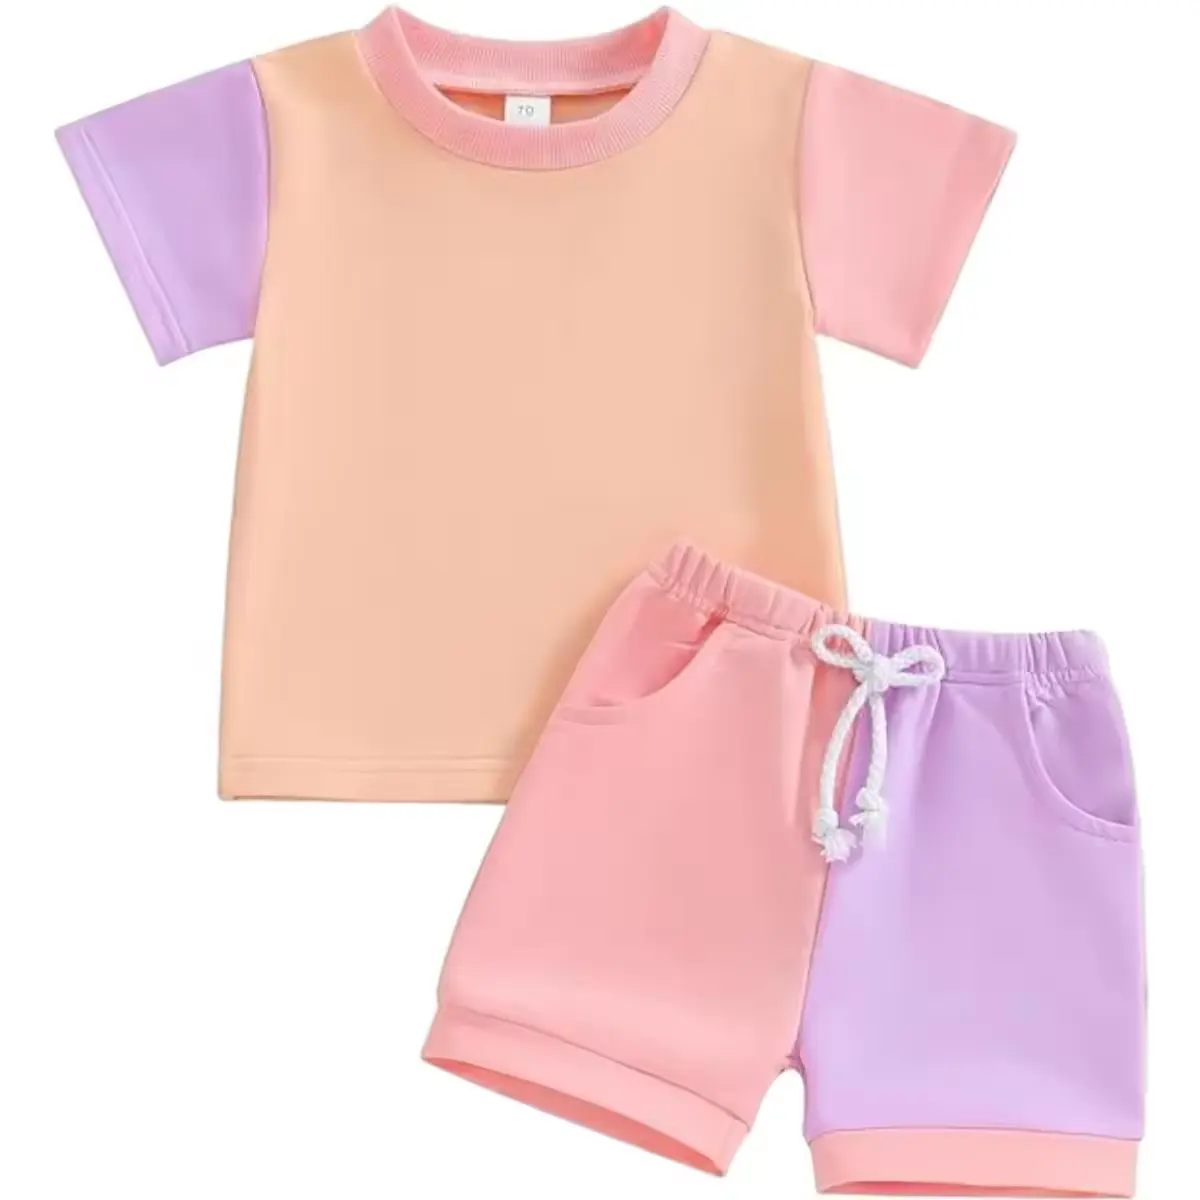 Wholesale Unisex Toddler Boy Casual Children's Wear T-shirt Trousers 2 Pieces Clothes Sets